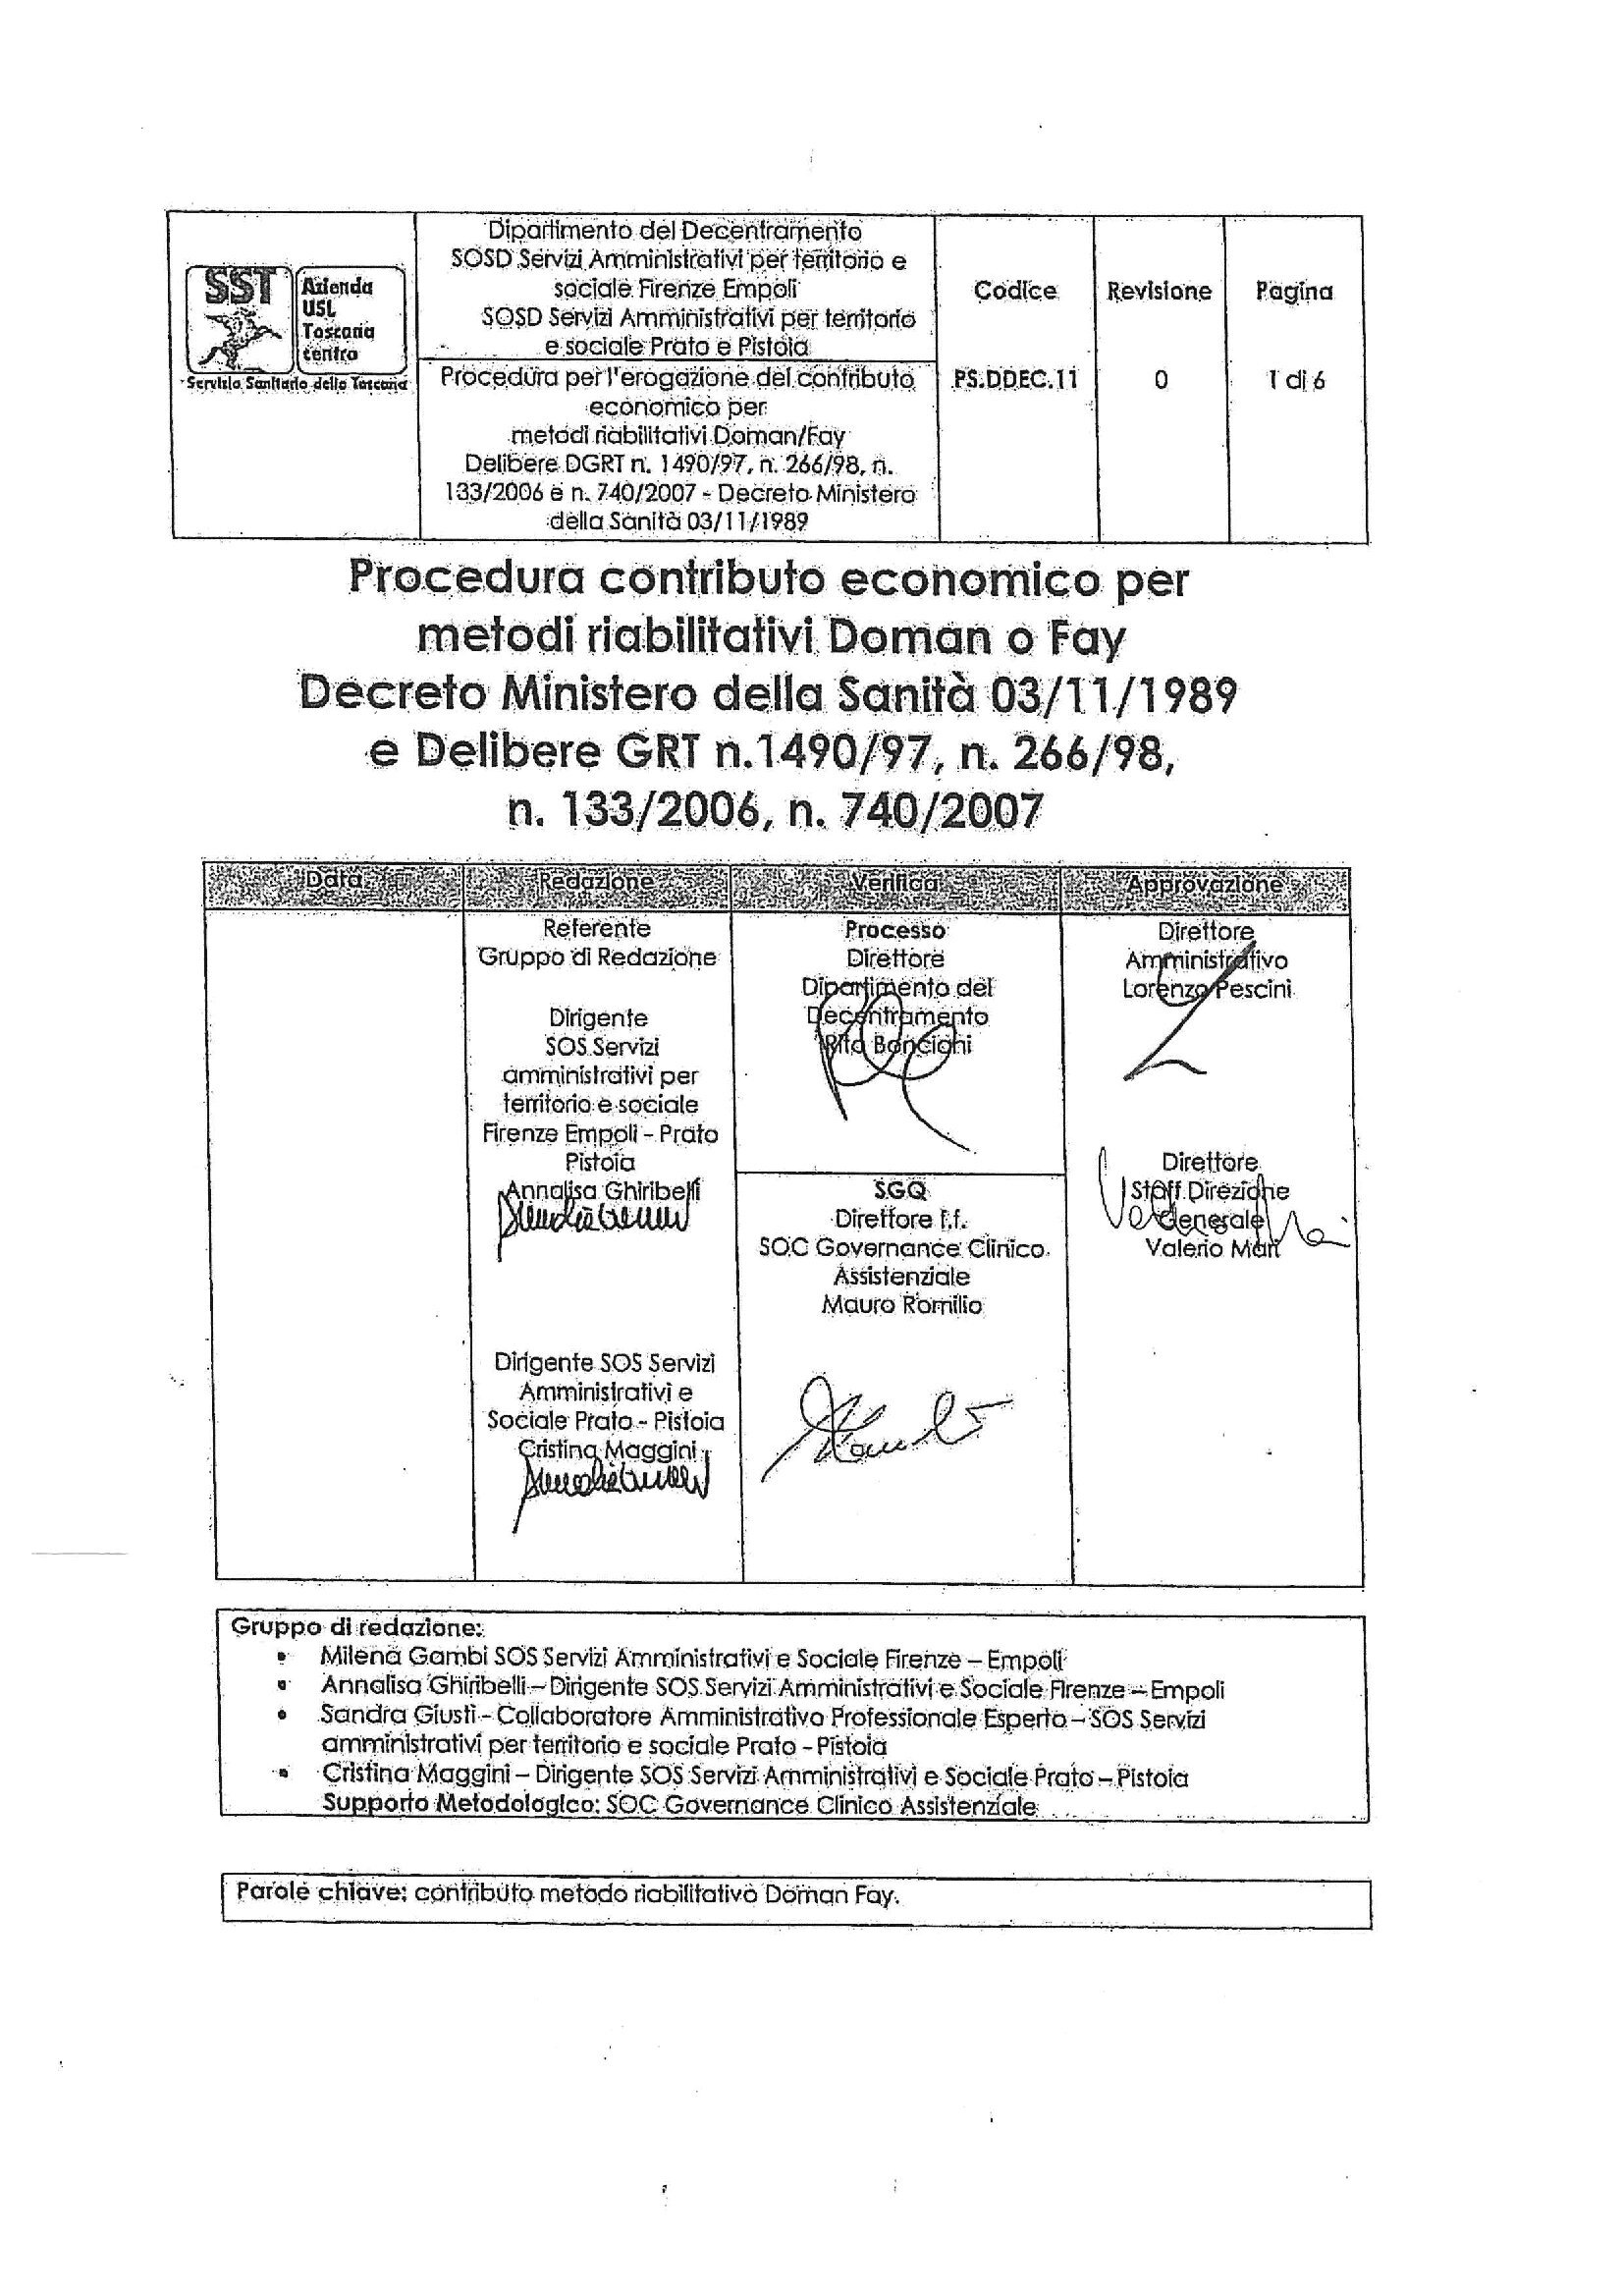 PS.DDEC.11 Procedura contributo economico per  metodi riabilitativi Doman o Fay  Decreto Ministero della Sanità 03/11/1989 e Delibere GRT n.1490/97, n. 266/98,  n. 133/2006, n. 740/2007